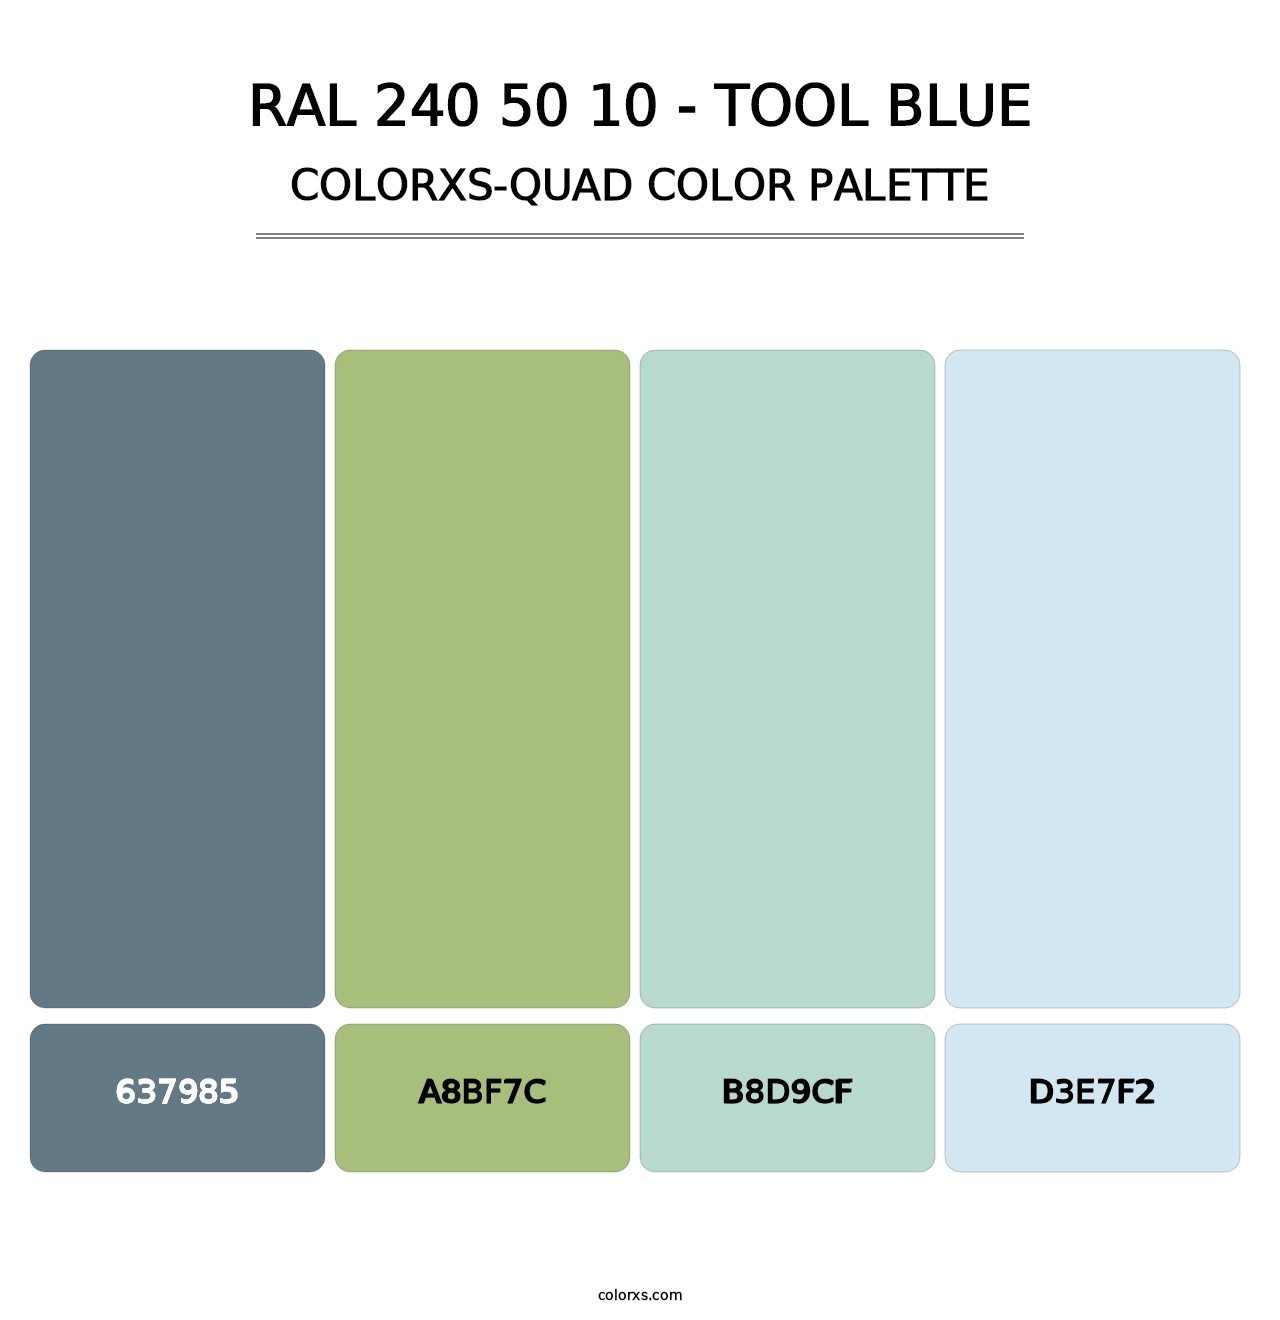 RAL 240 50 10 - Tool Blue - Colorxs Quad Palette